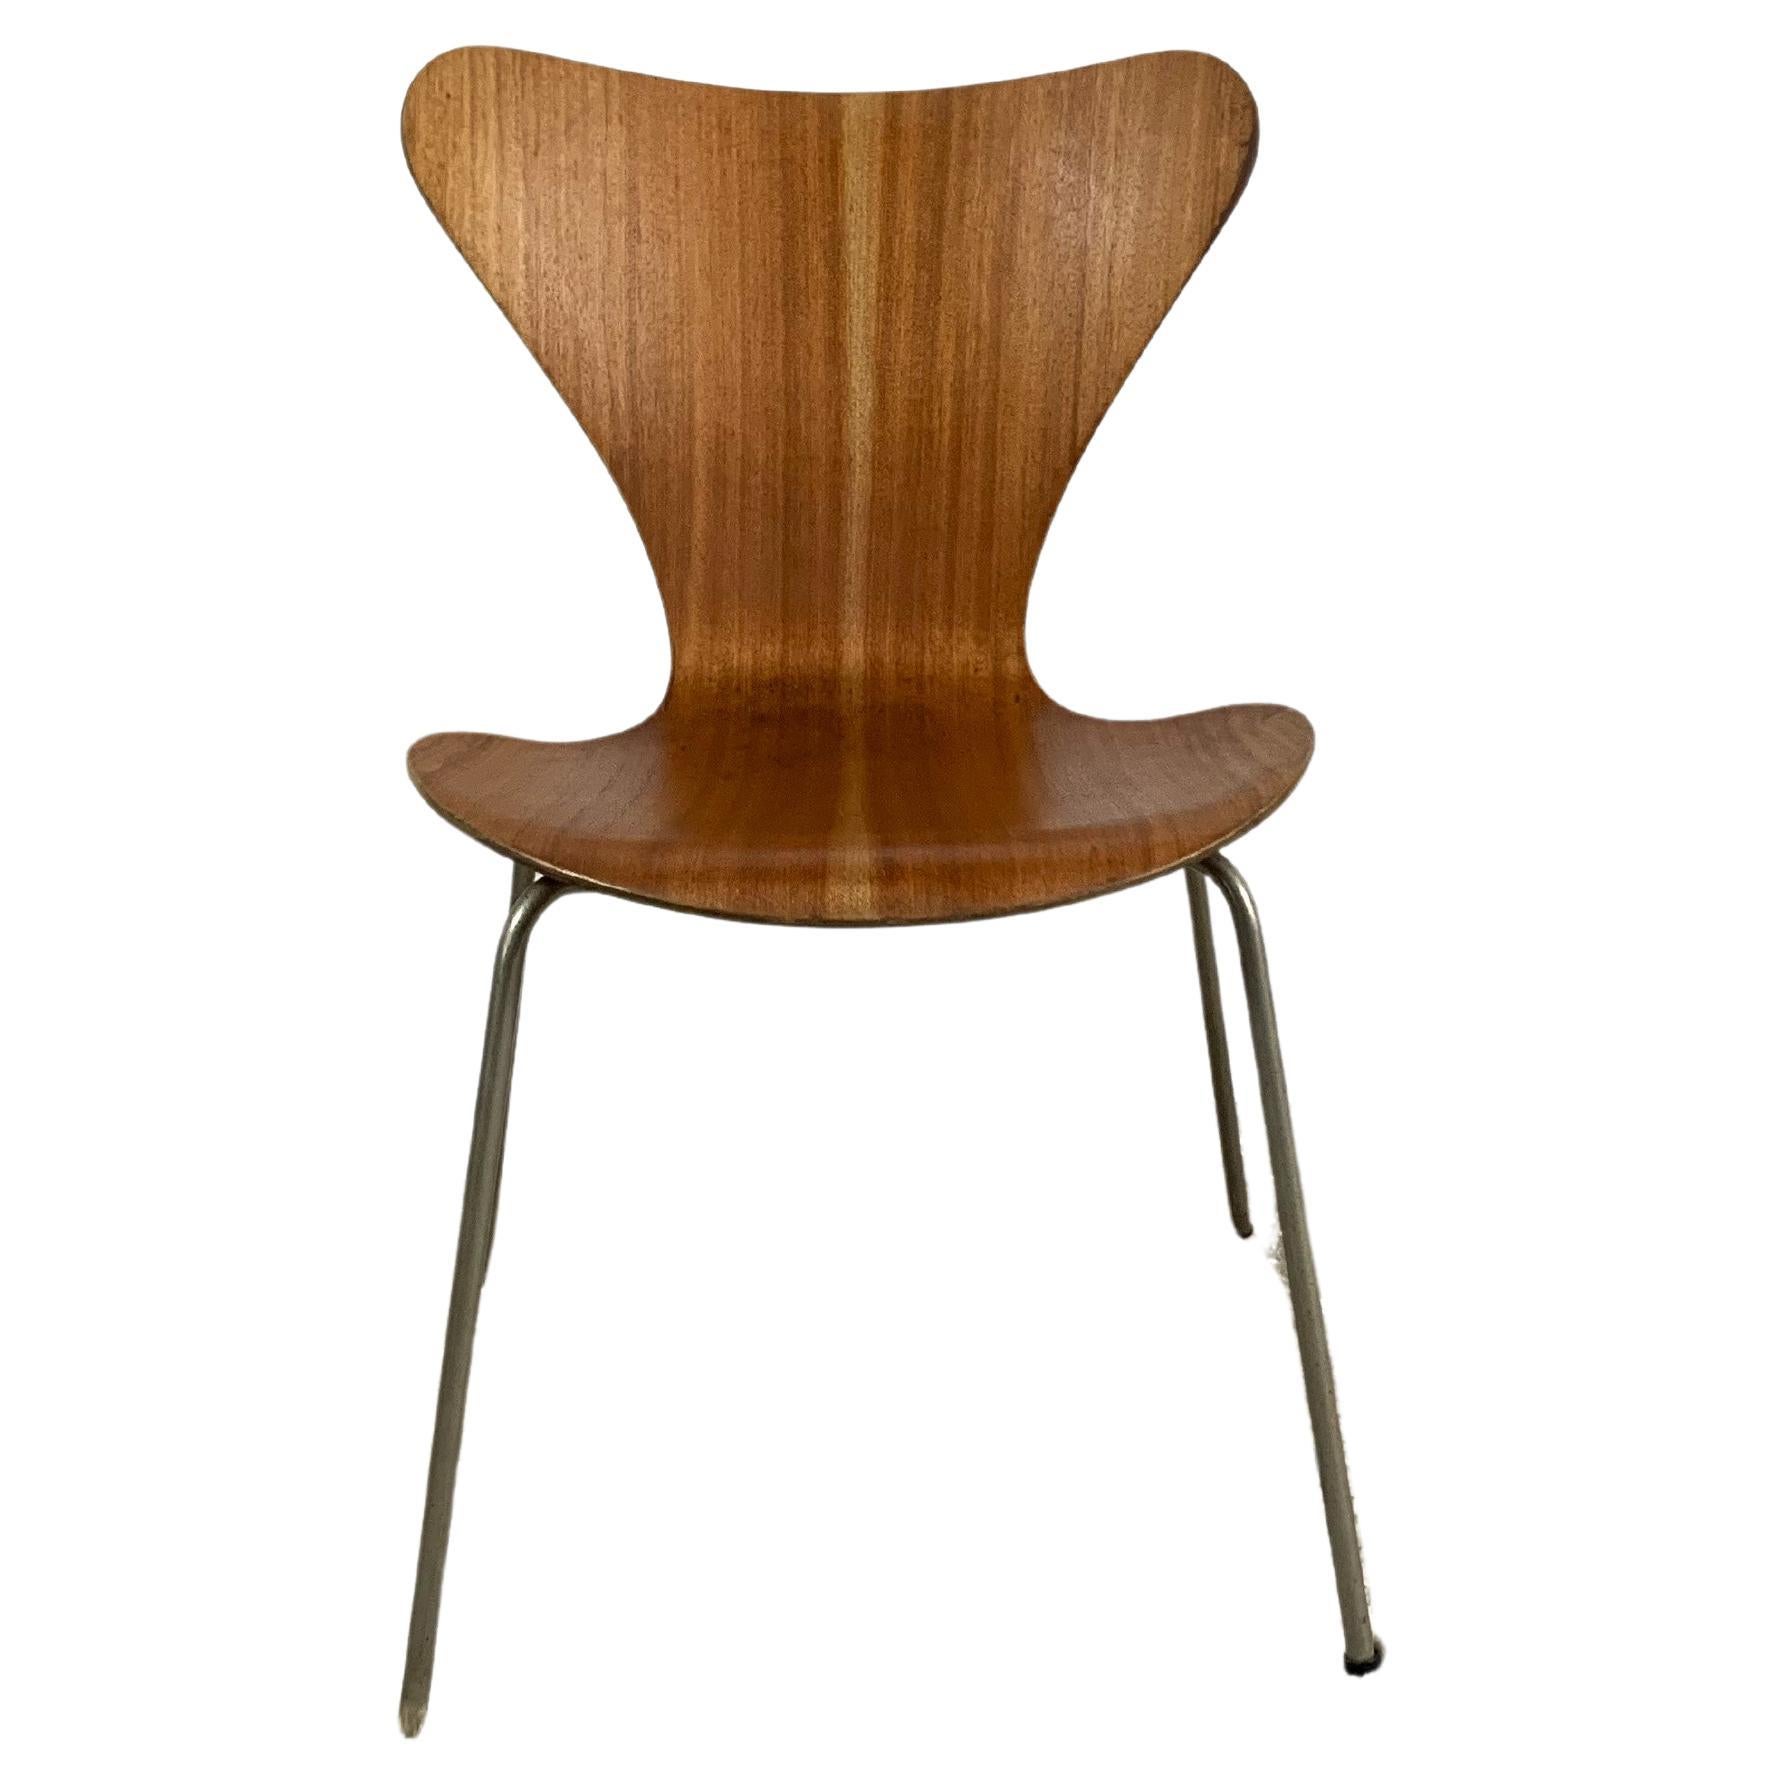 3107 Chair By Arne Jacobsen For Fritz Hansen, 1960s